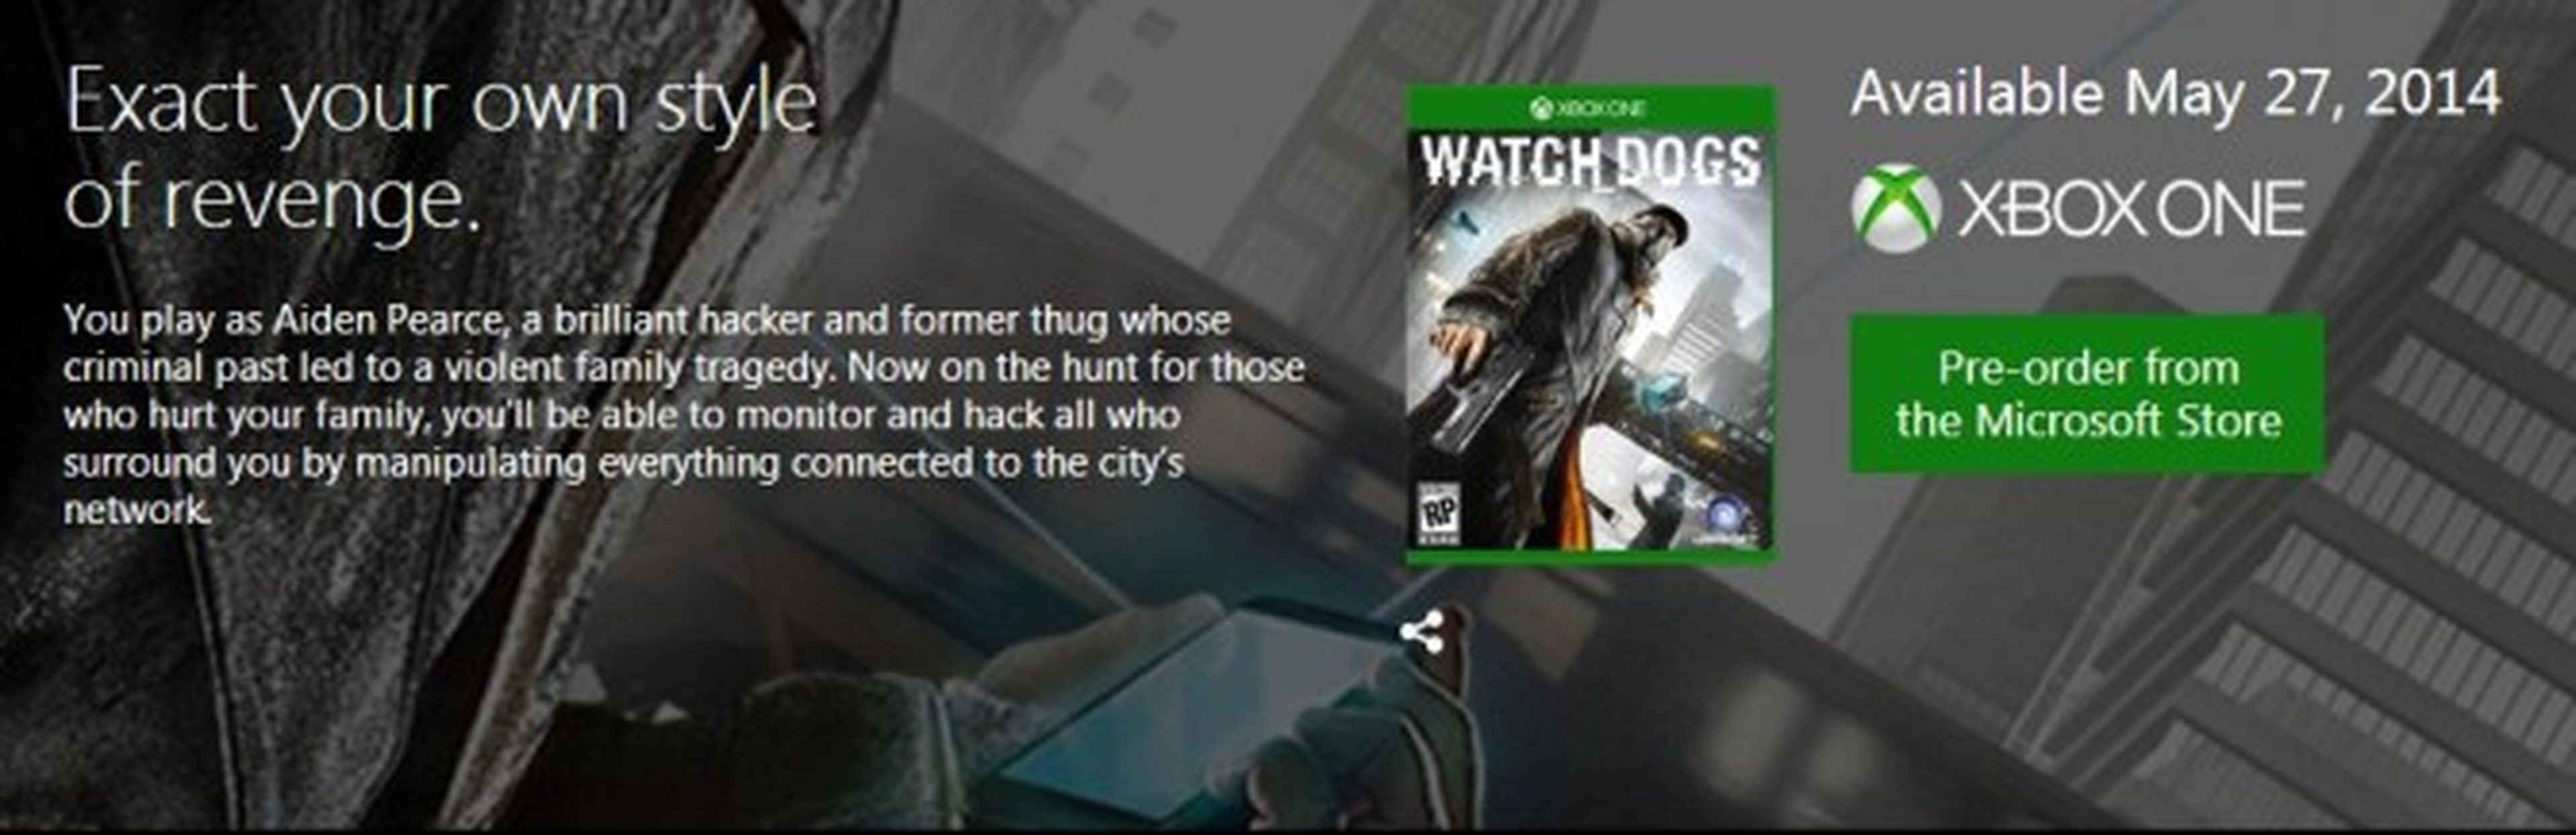 Confirmada la resolución y el frame rate de Watch Dogs en Playstation 4 y Xbox One